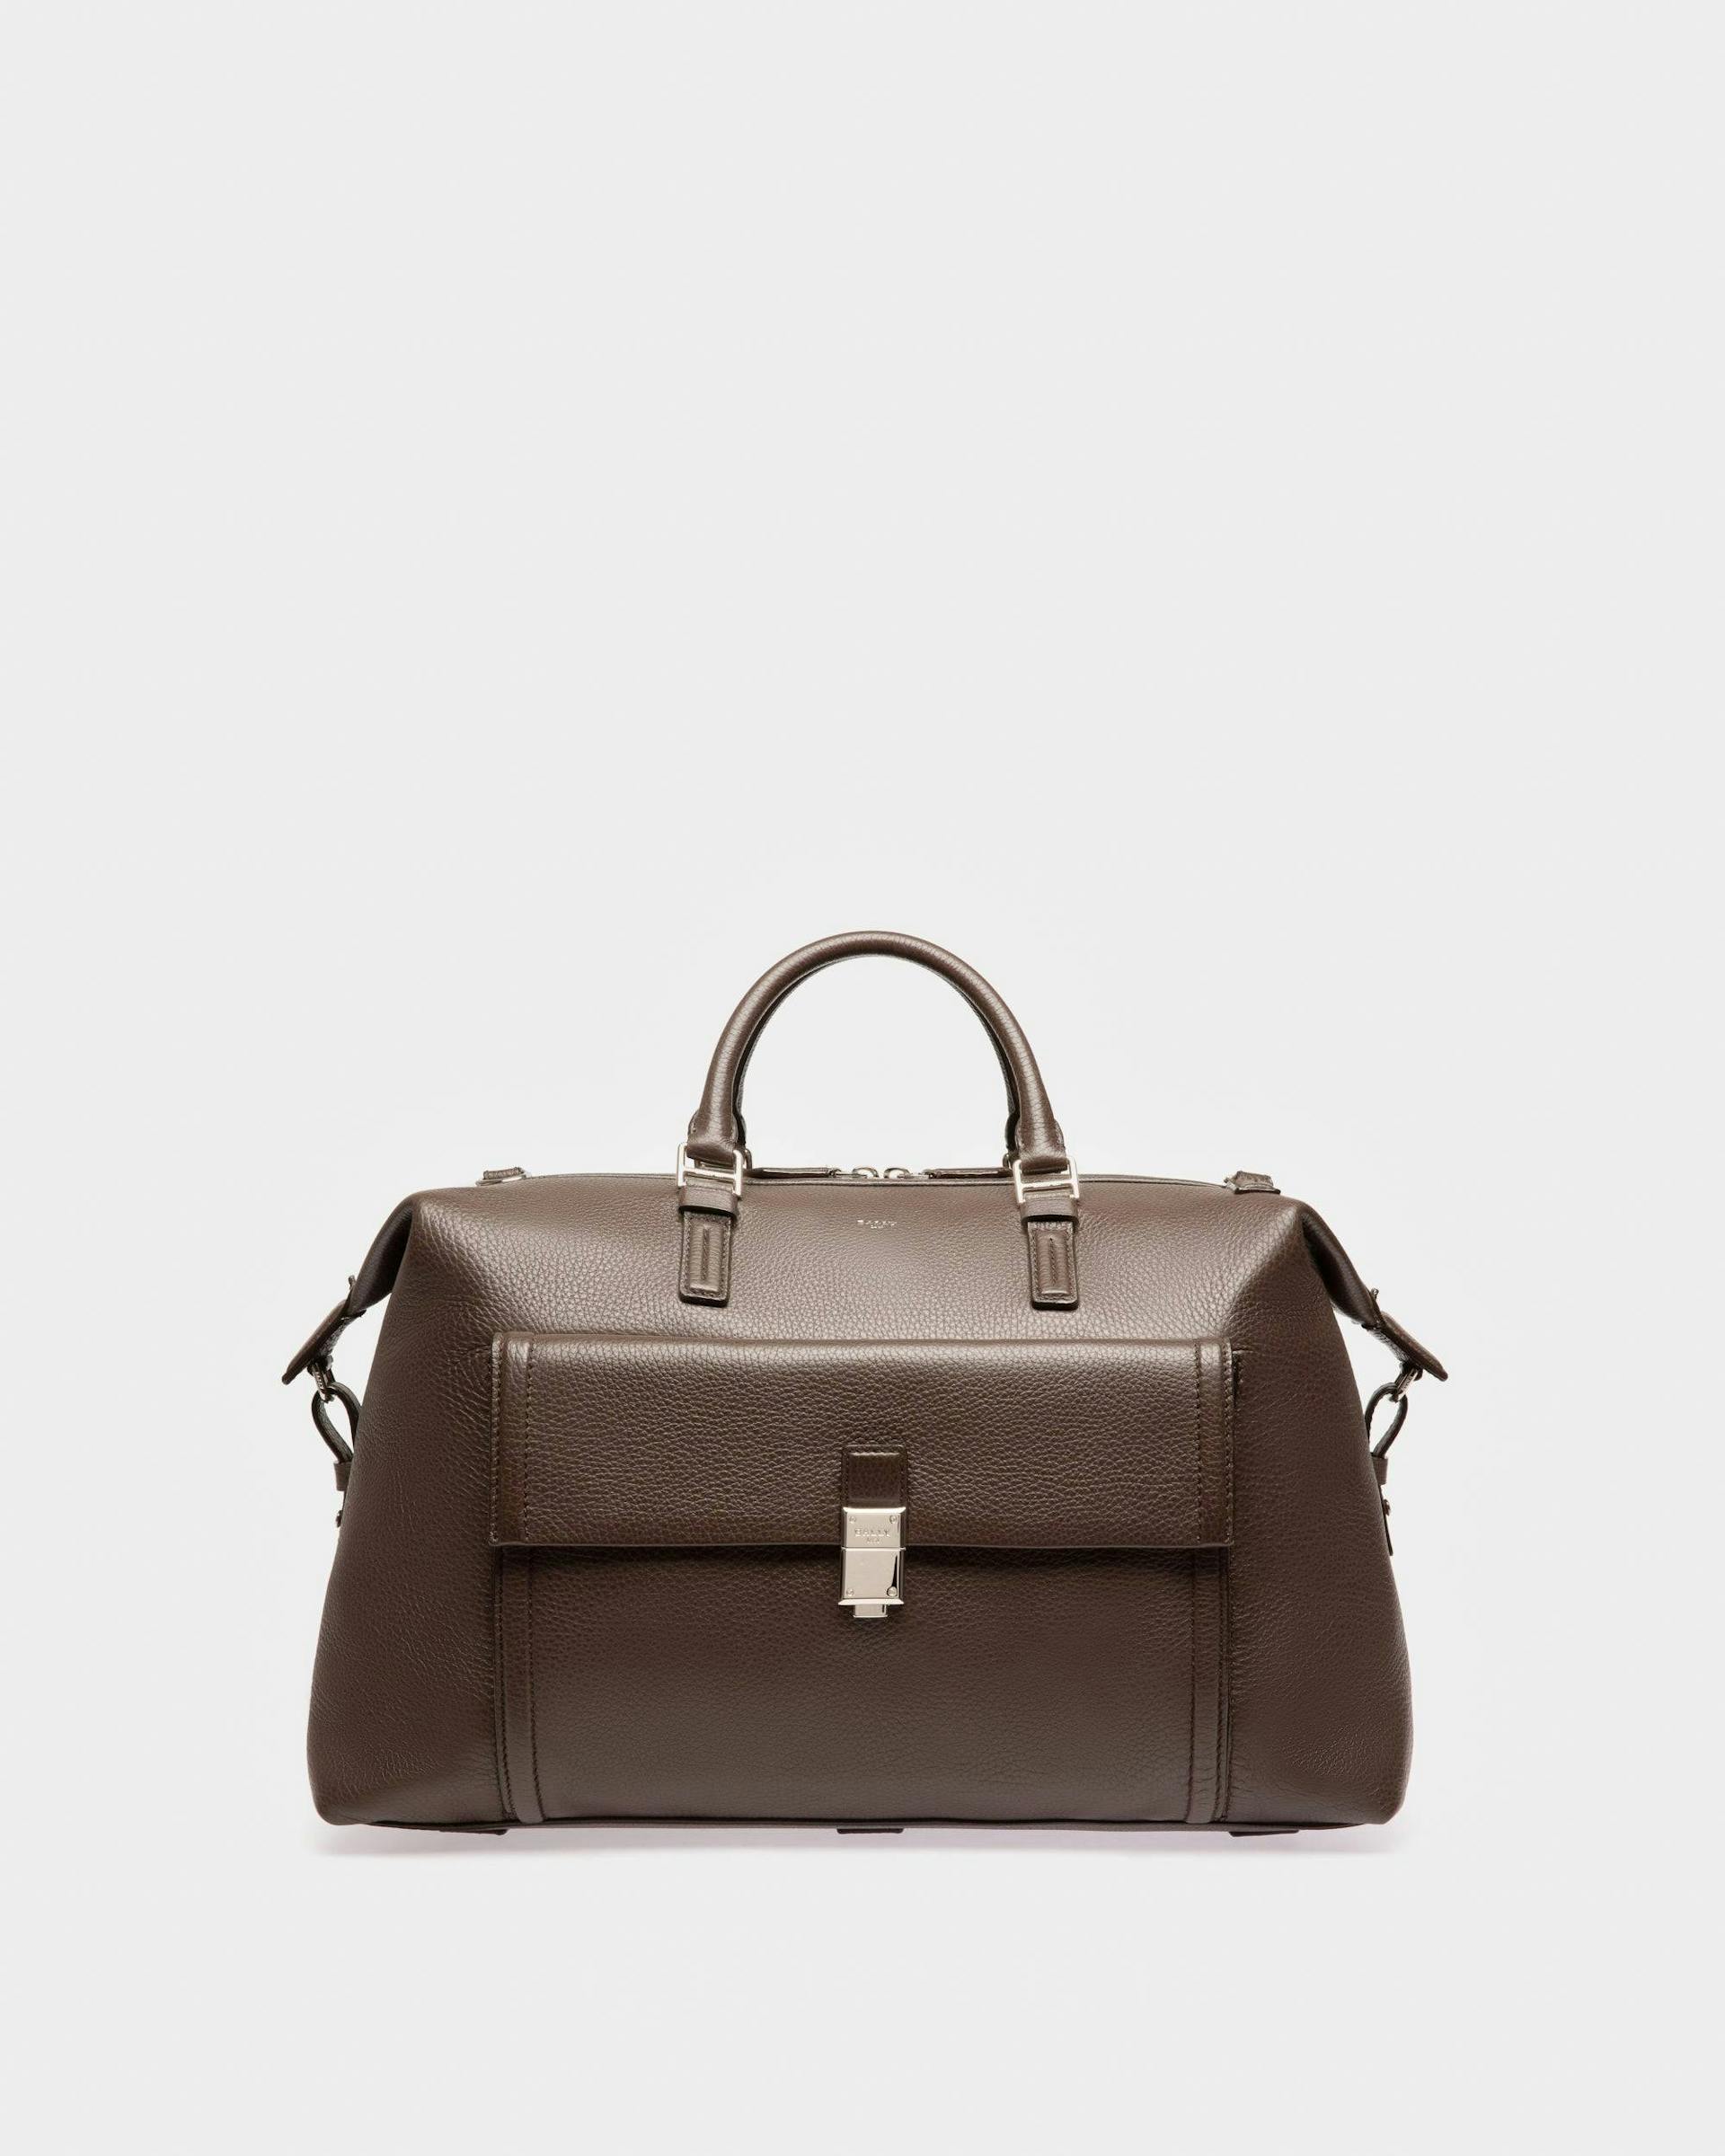 Sandri Leather Weekender Bag In Ebony Brown - Men's - Bally - 01